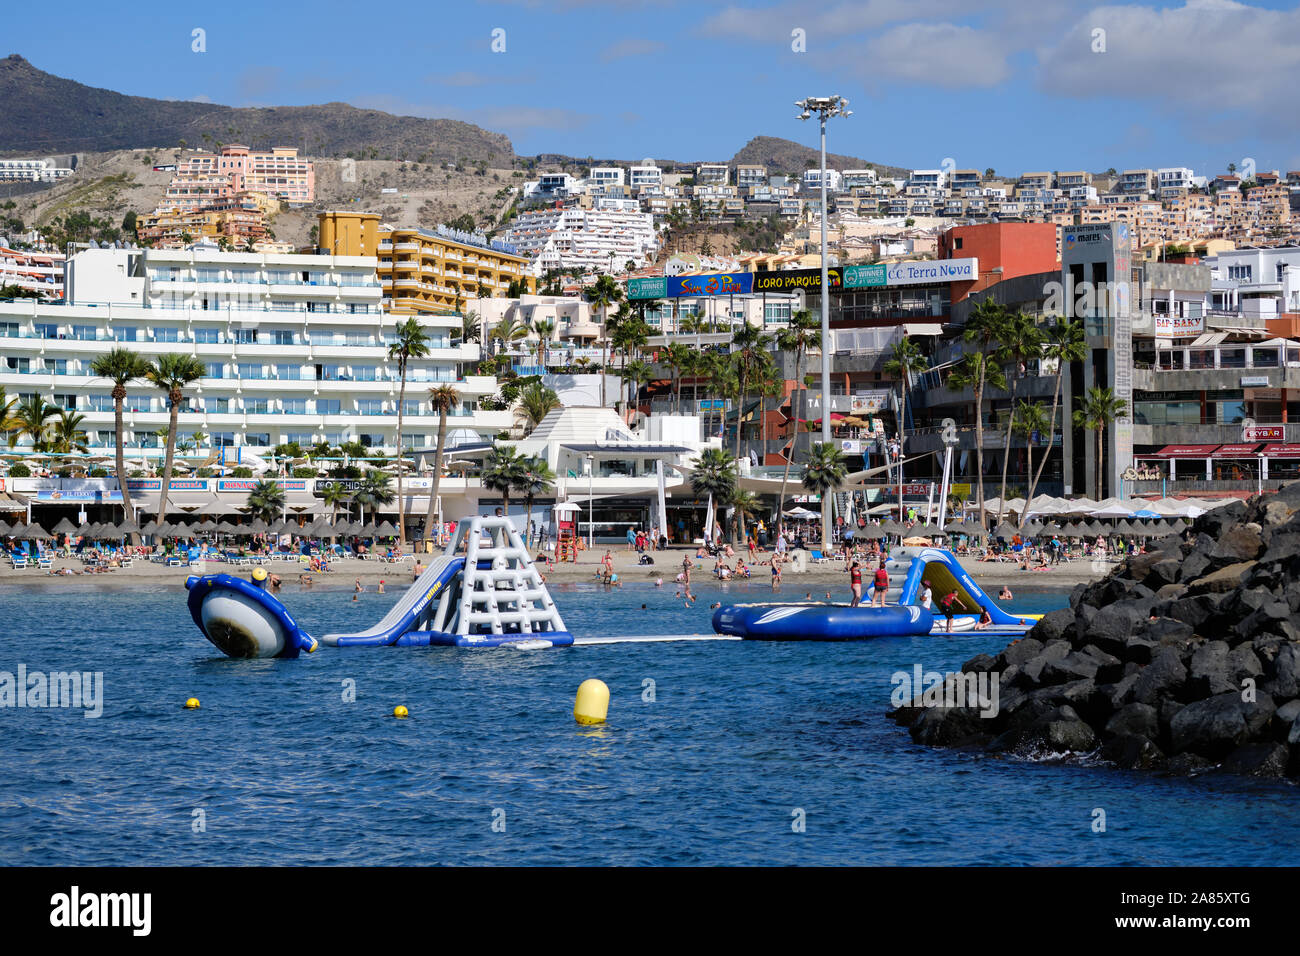 Tenerife, Spagna - 15 ottobre 2019: Le persone godono di divertimenti acquatici sulla costa di Los Cristianos, città turistica, Isole Canarie, Spagna Foto Stock